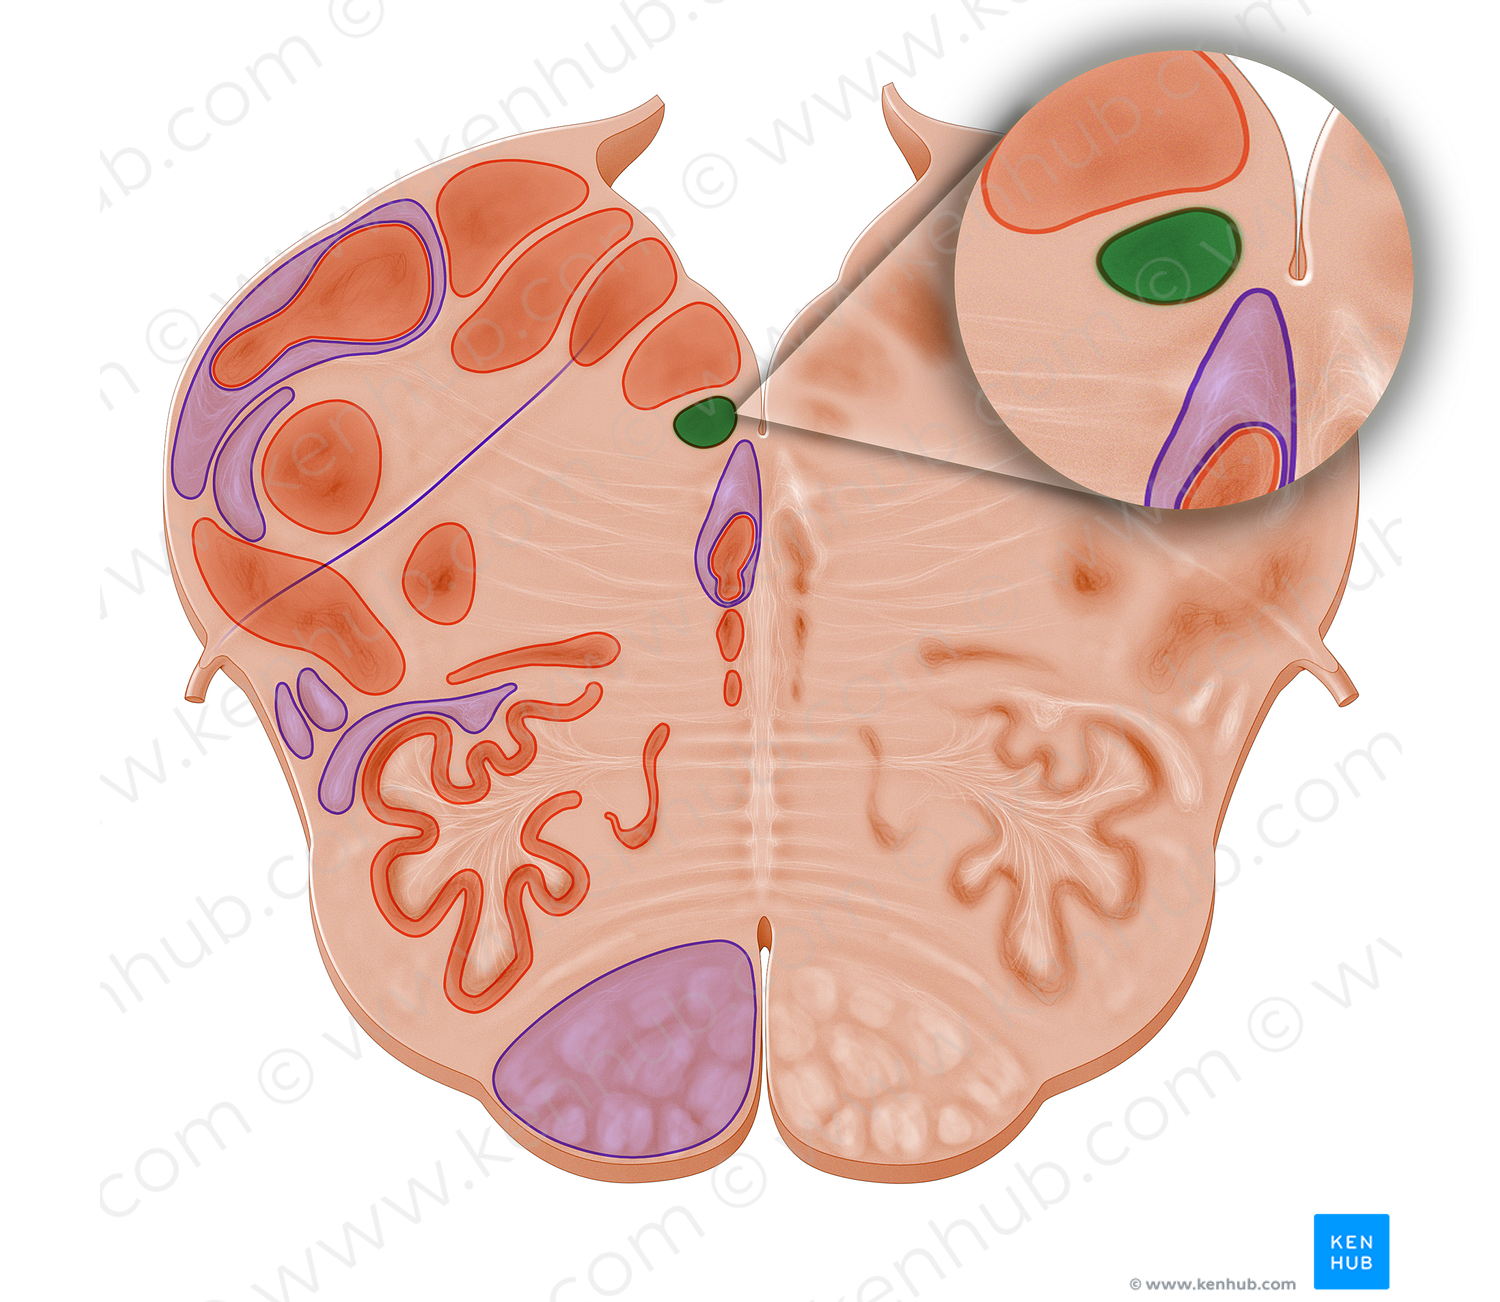 Subhypoglossal nucleus (#11091)